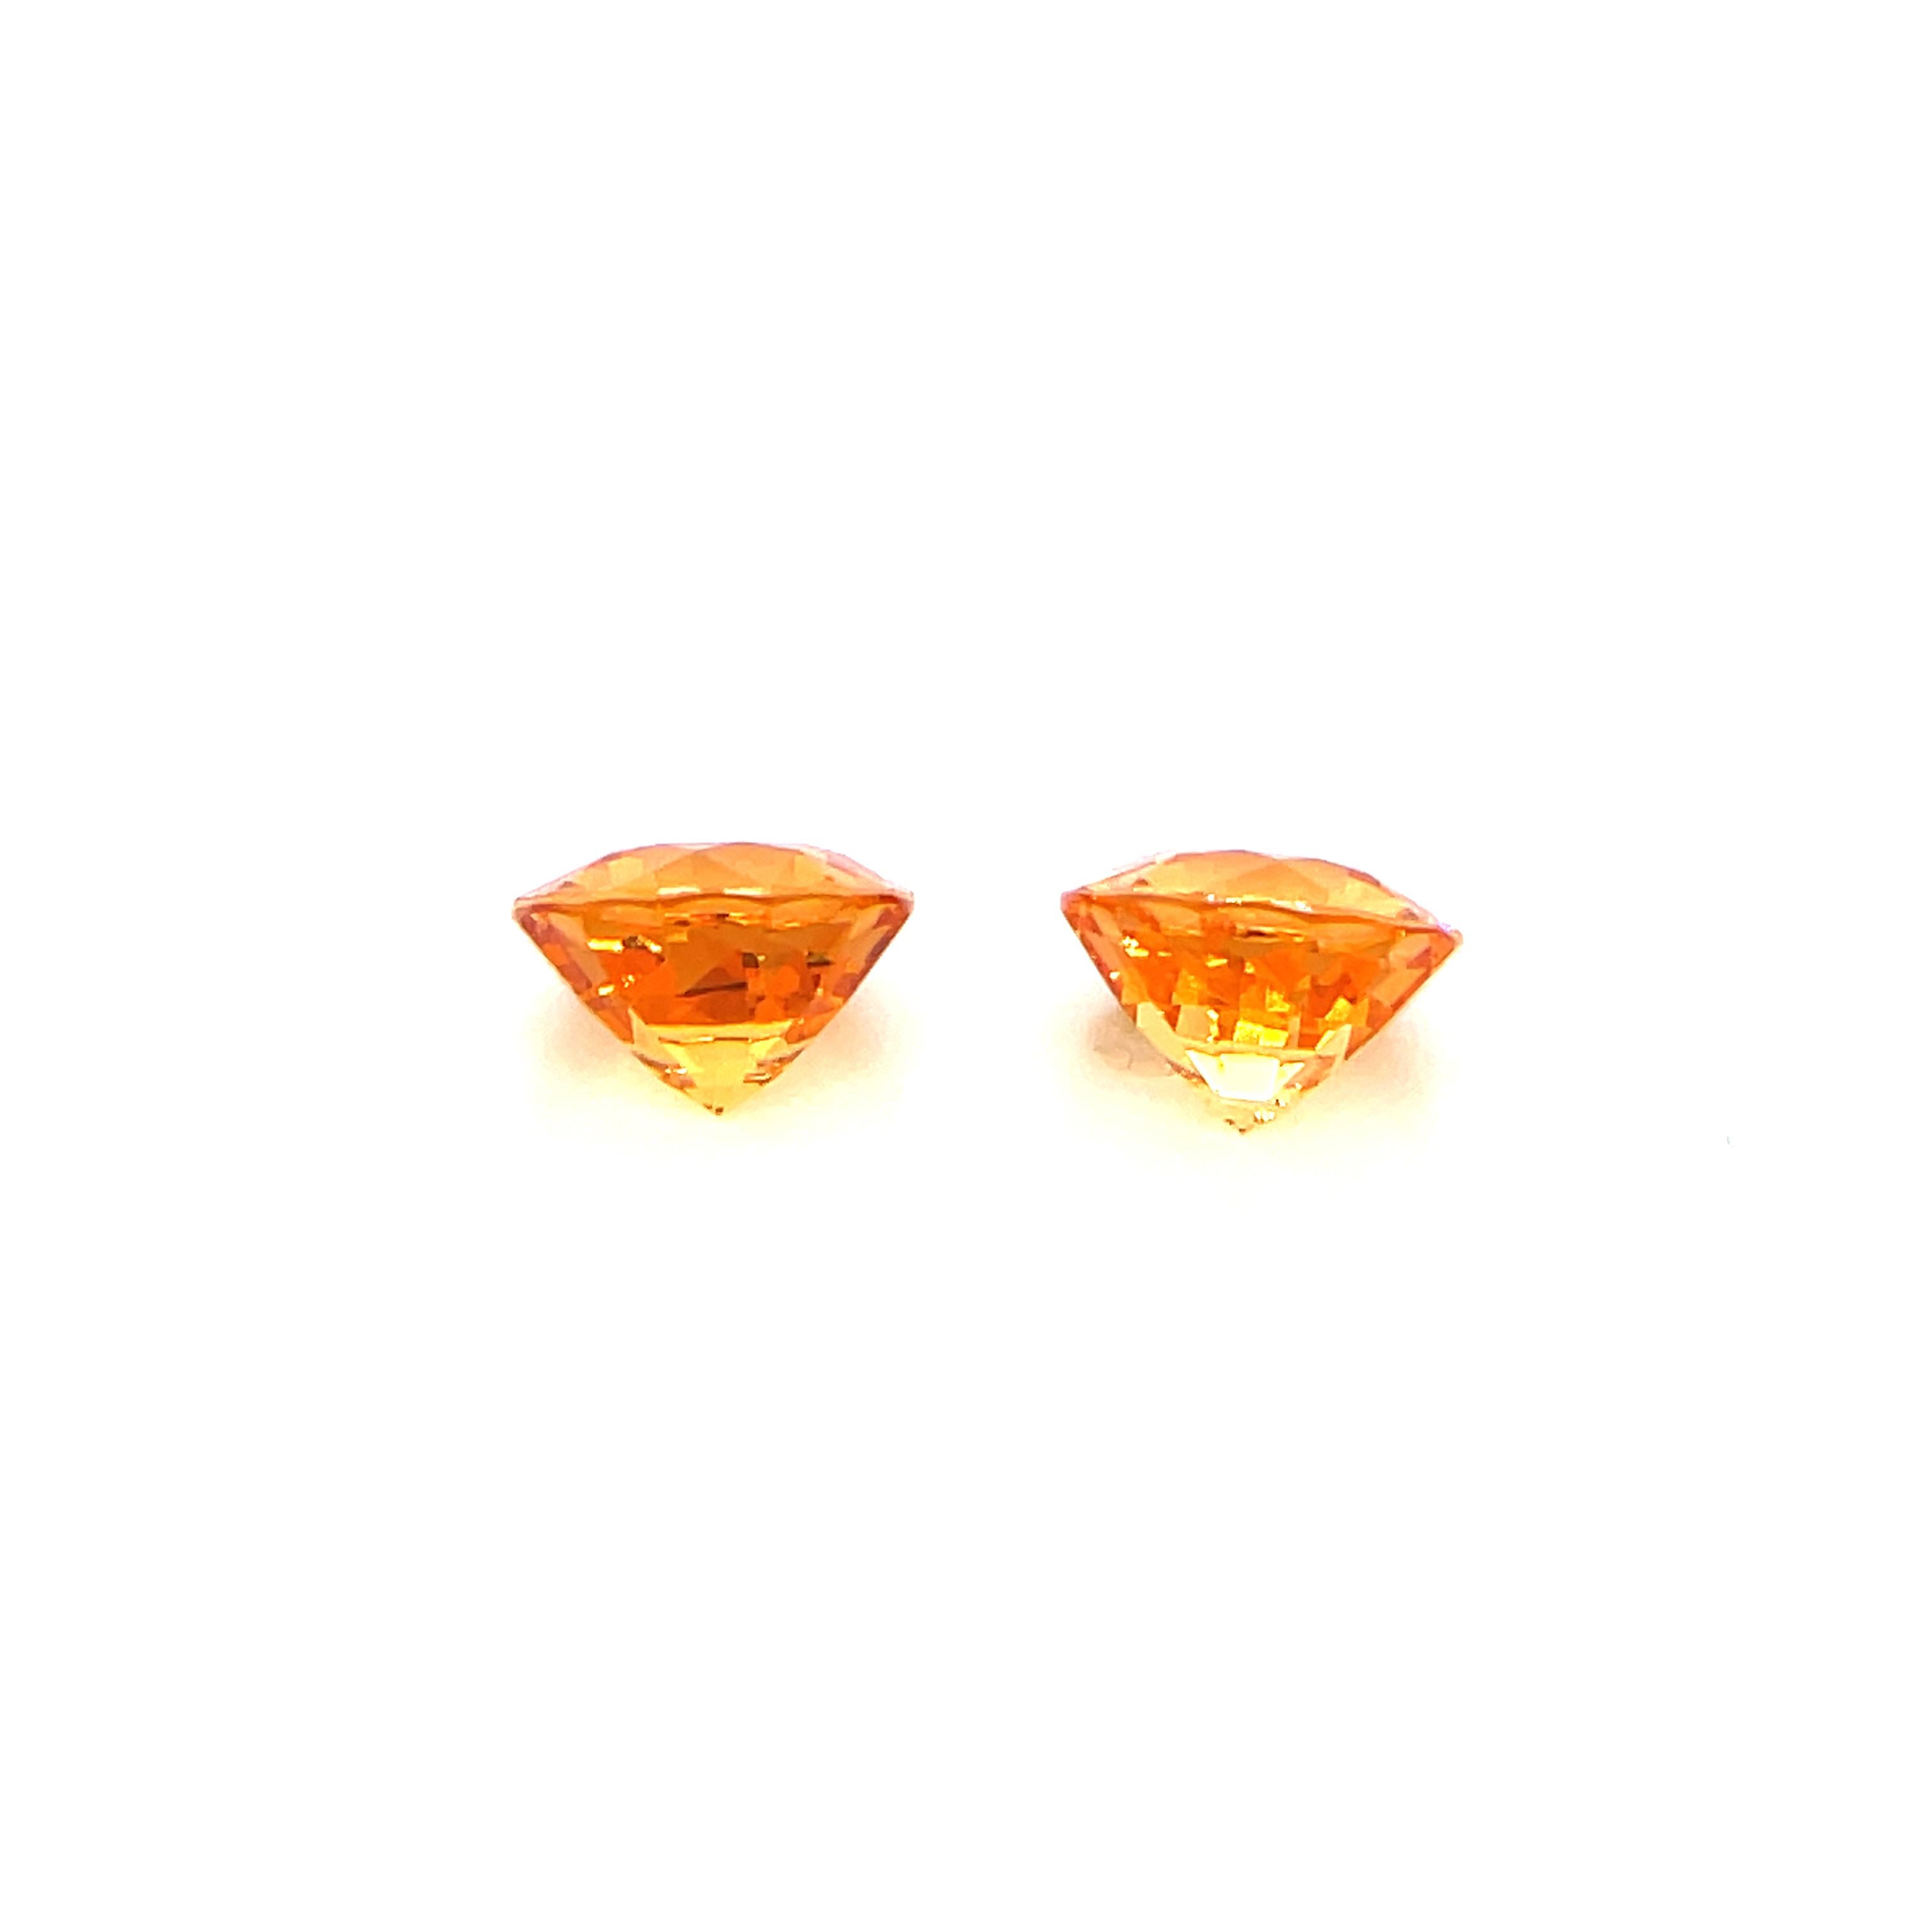 2 Round Mandarin Garnet Gemstones Cts 3.28 For Sale 1